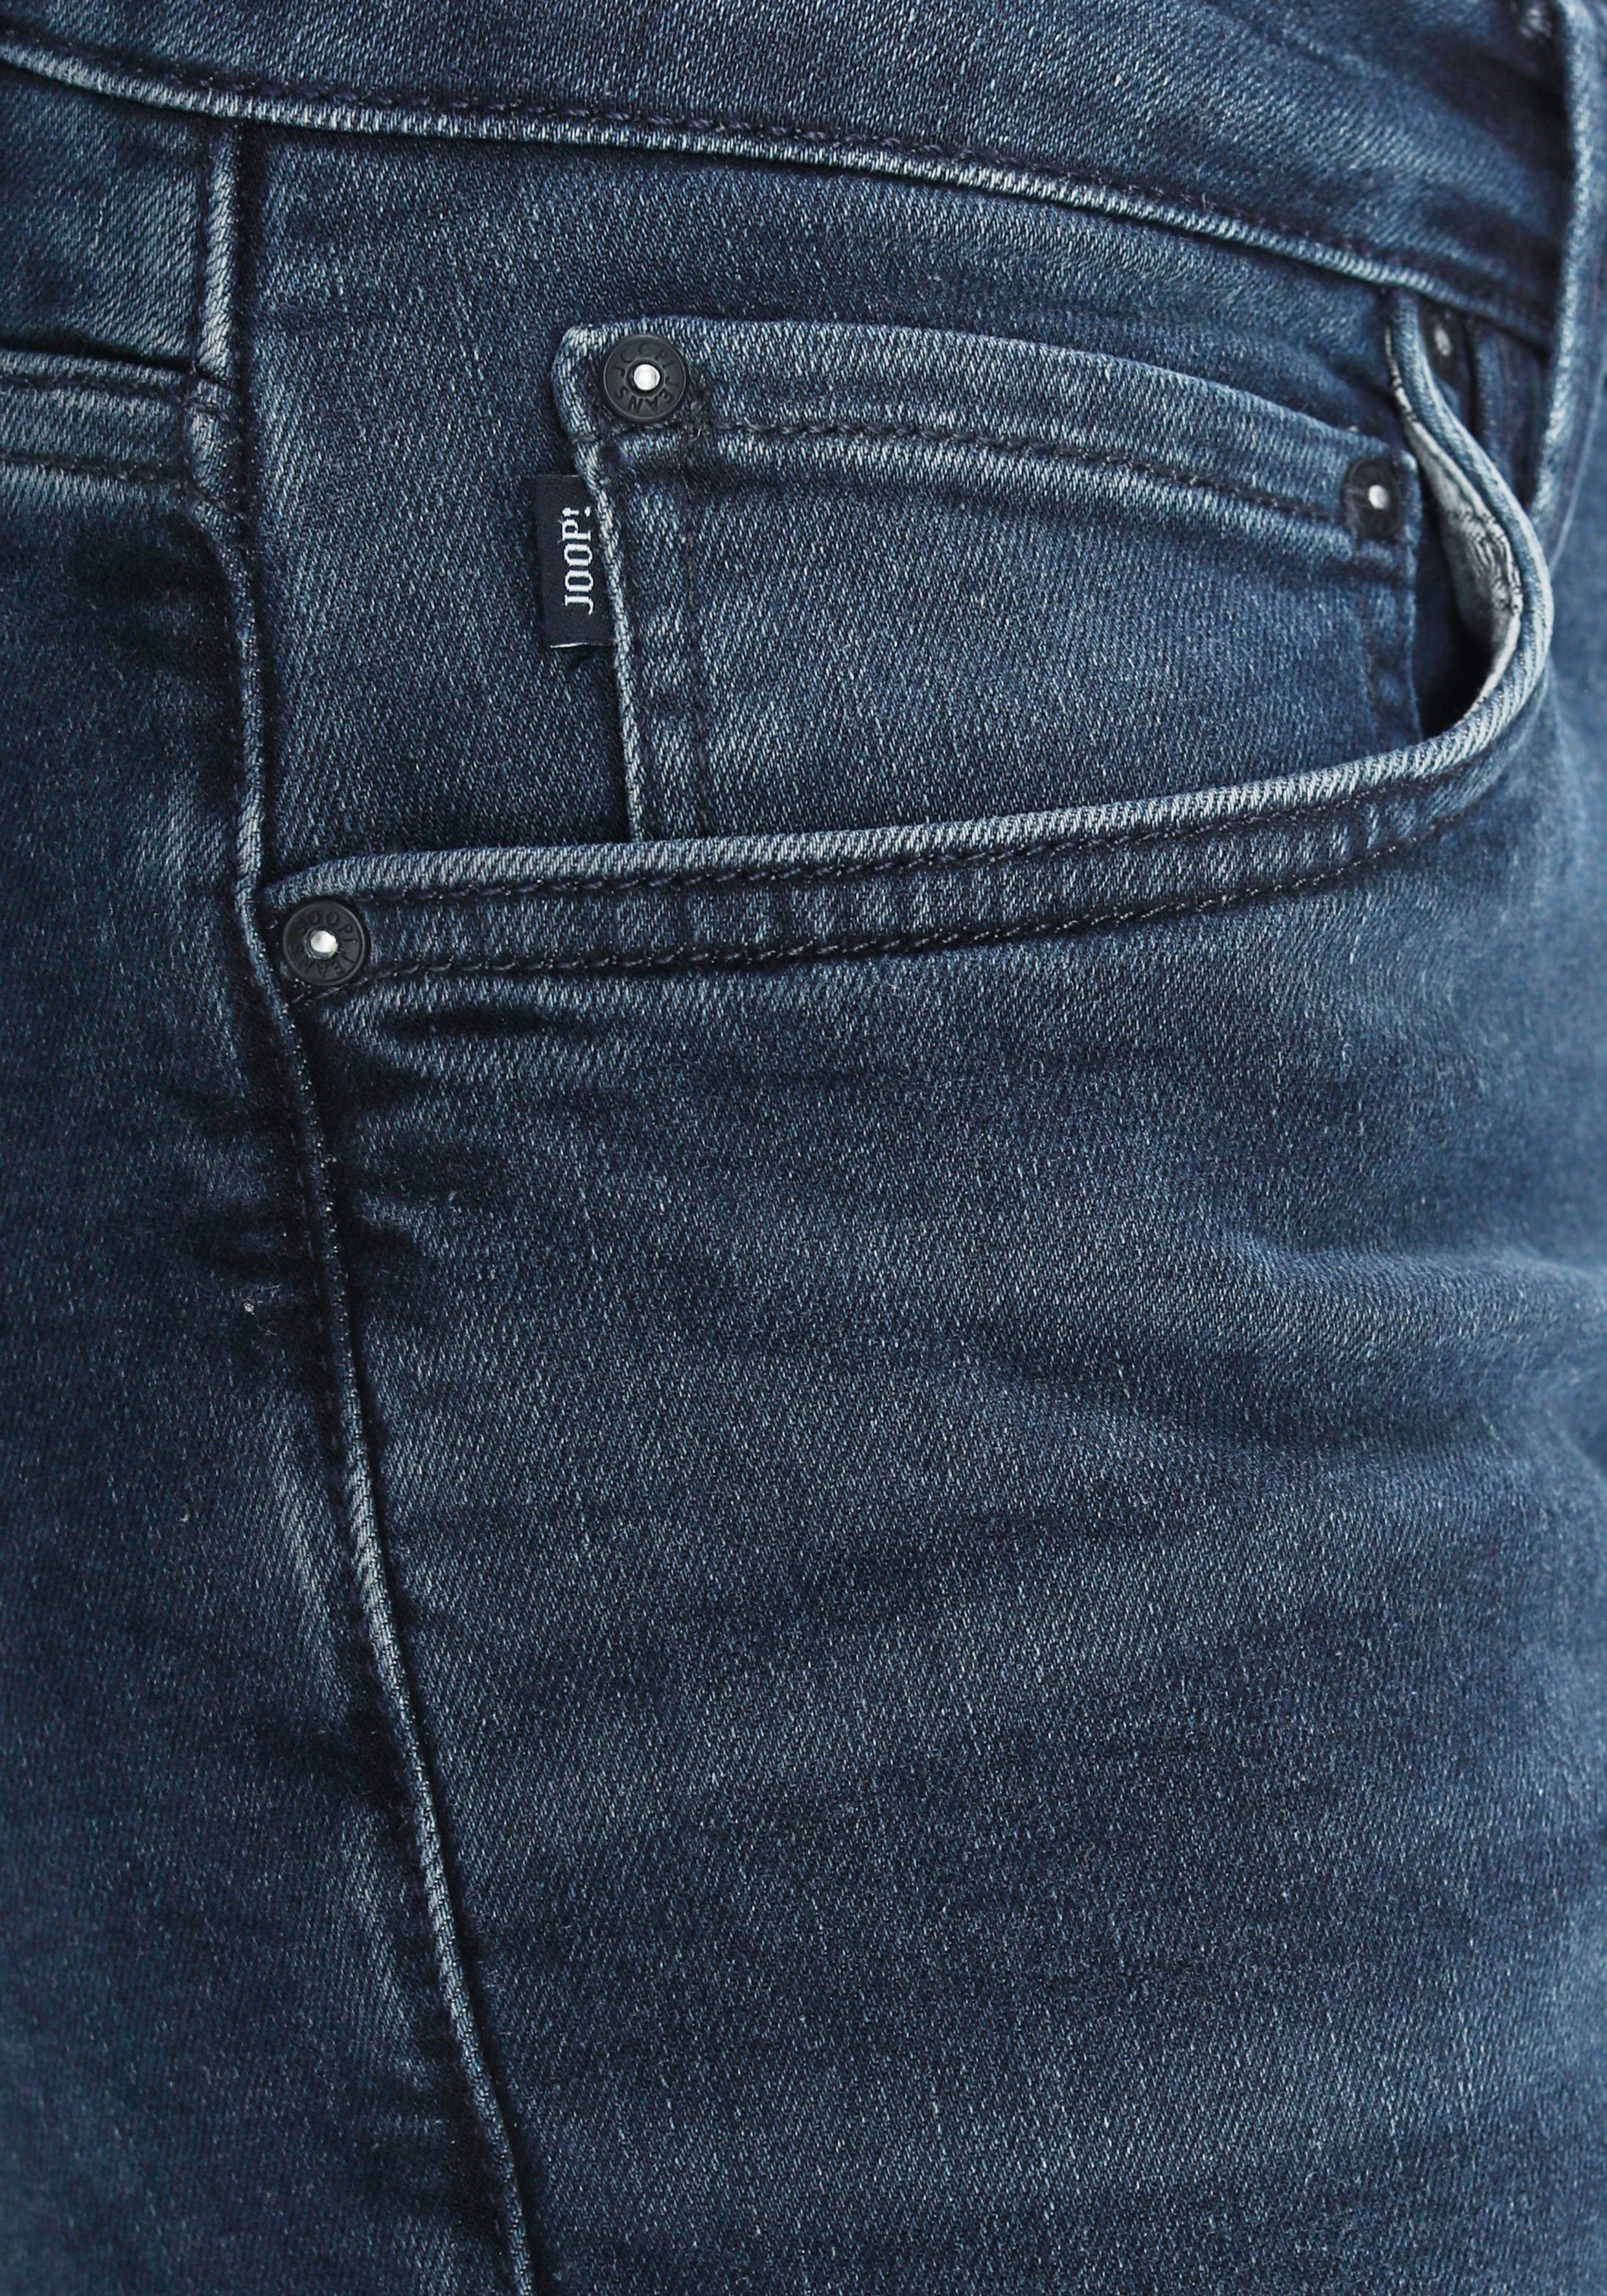 Stephen 5-Pocket-Jeans Joop navy used Jeans Joop!